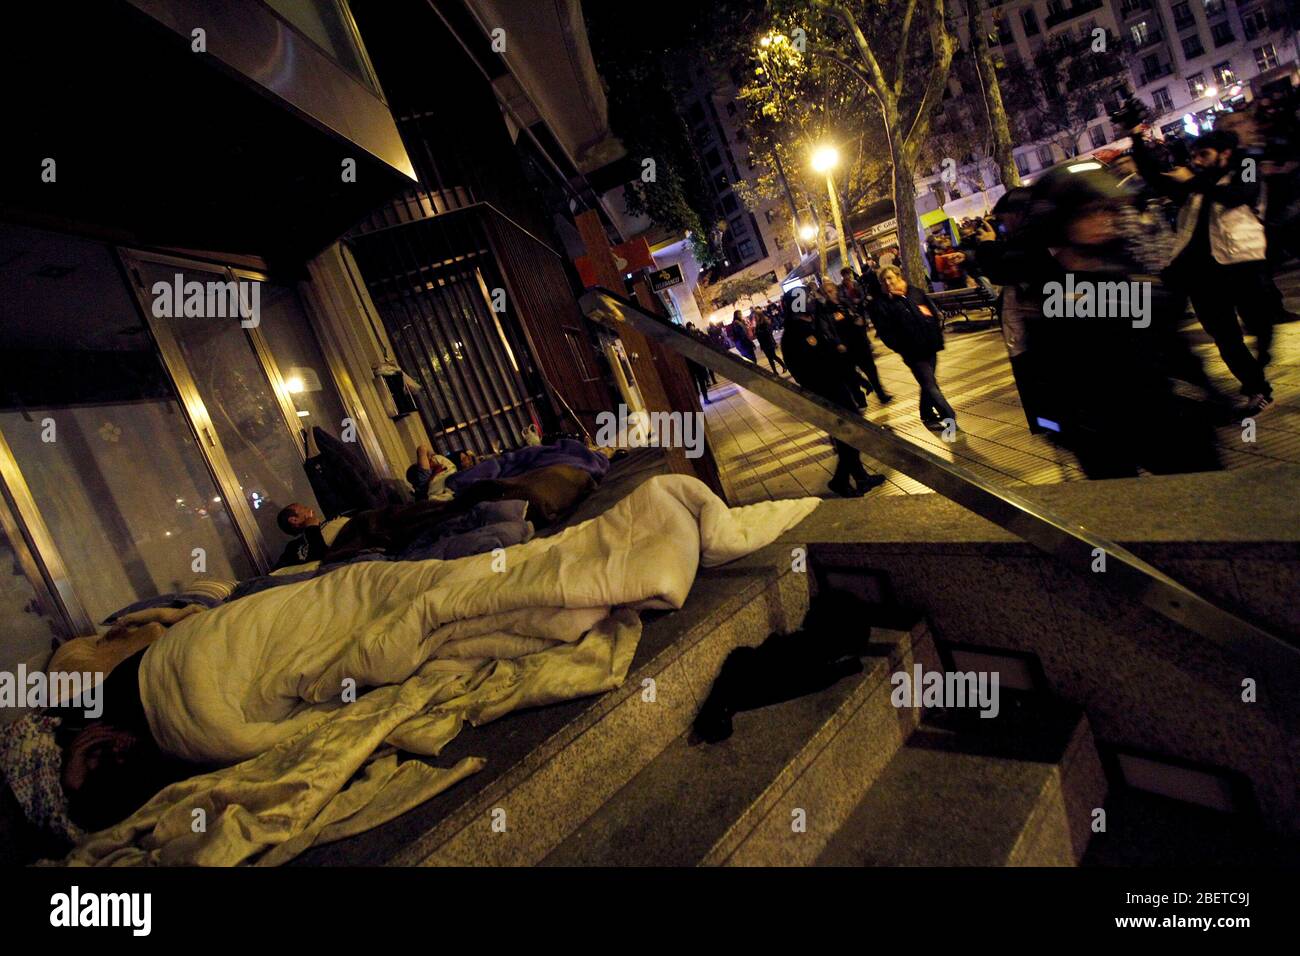 Europäischer Generalstreik.EINE Gruppe von Obdachlosen schläft auf der Straße, umgeben von einigen Mitgliedern der Nationalen Polizei.November 14,2012. (ALTERPHOTOS/Carlo Stockfoto